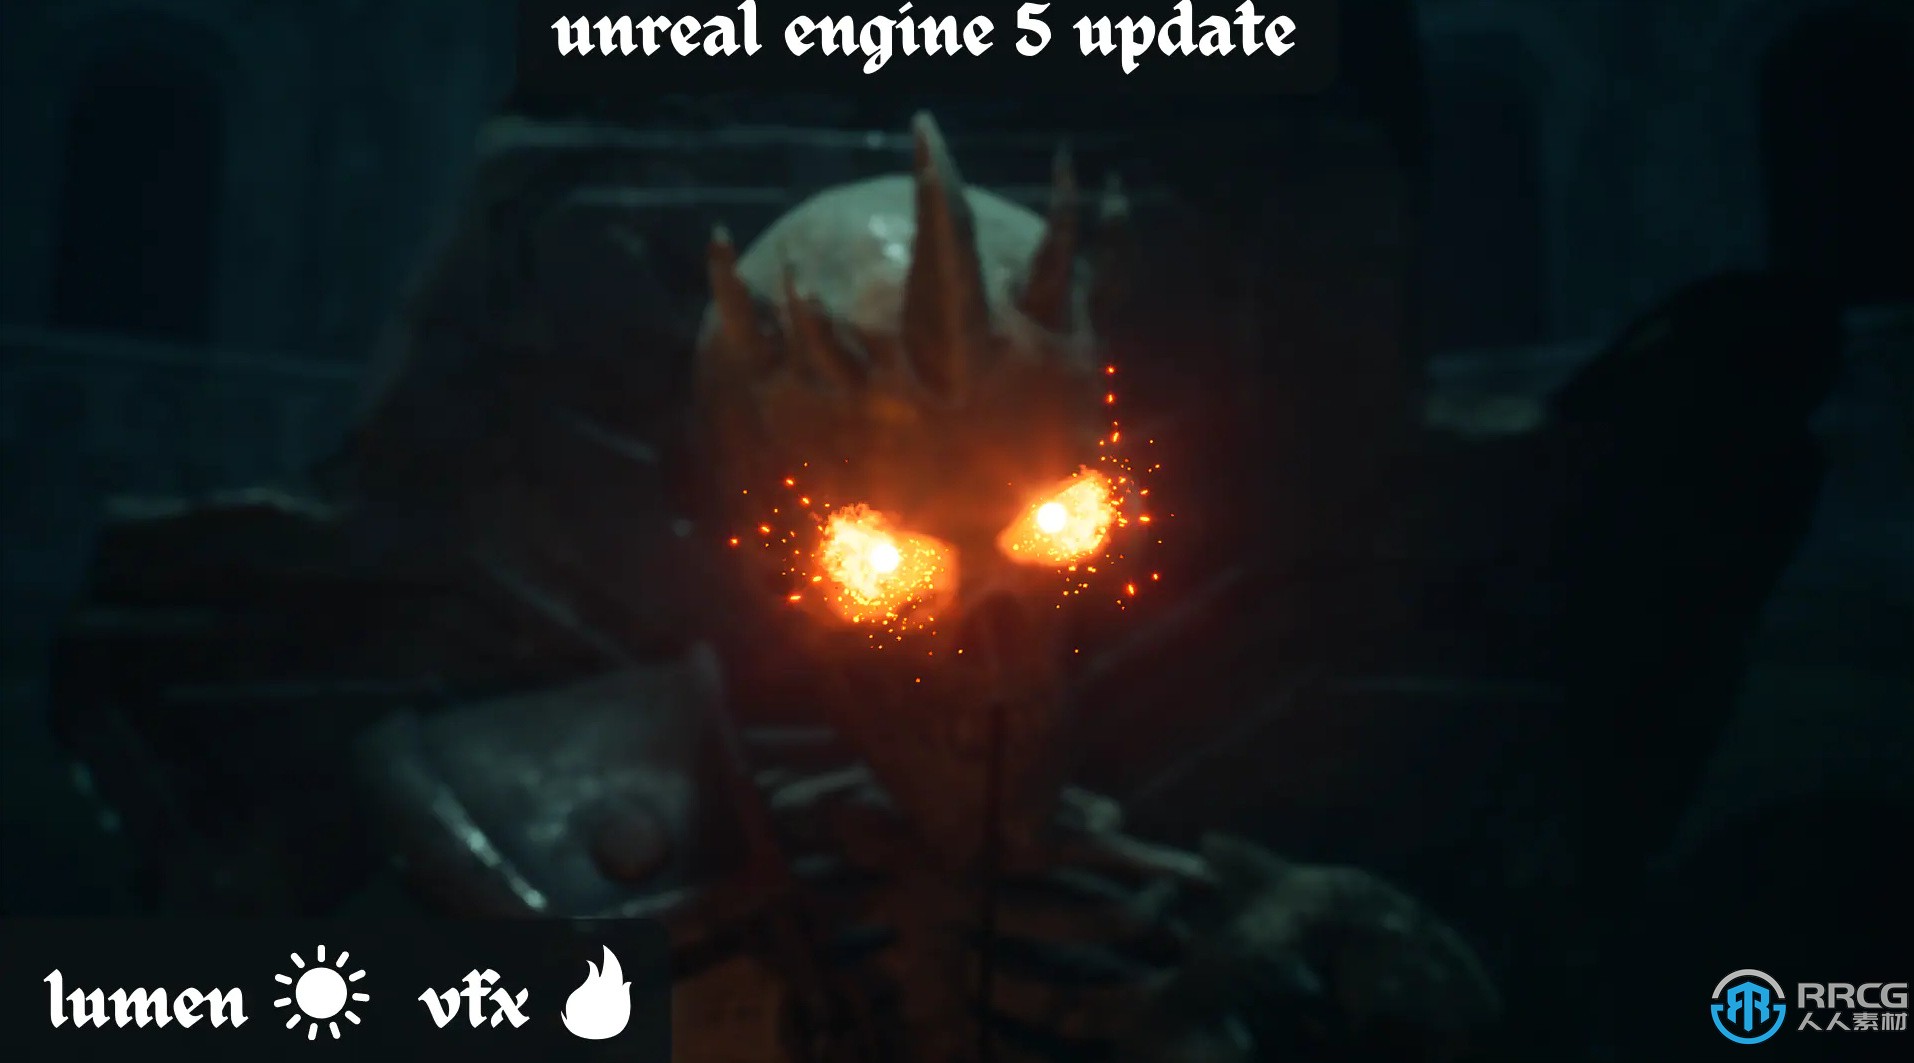 Unreal Engine虚幻引擎游戏素材2022年2月合集第二季